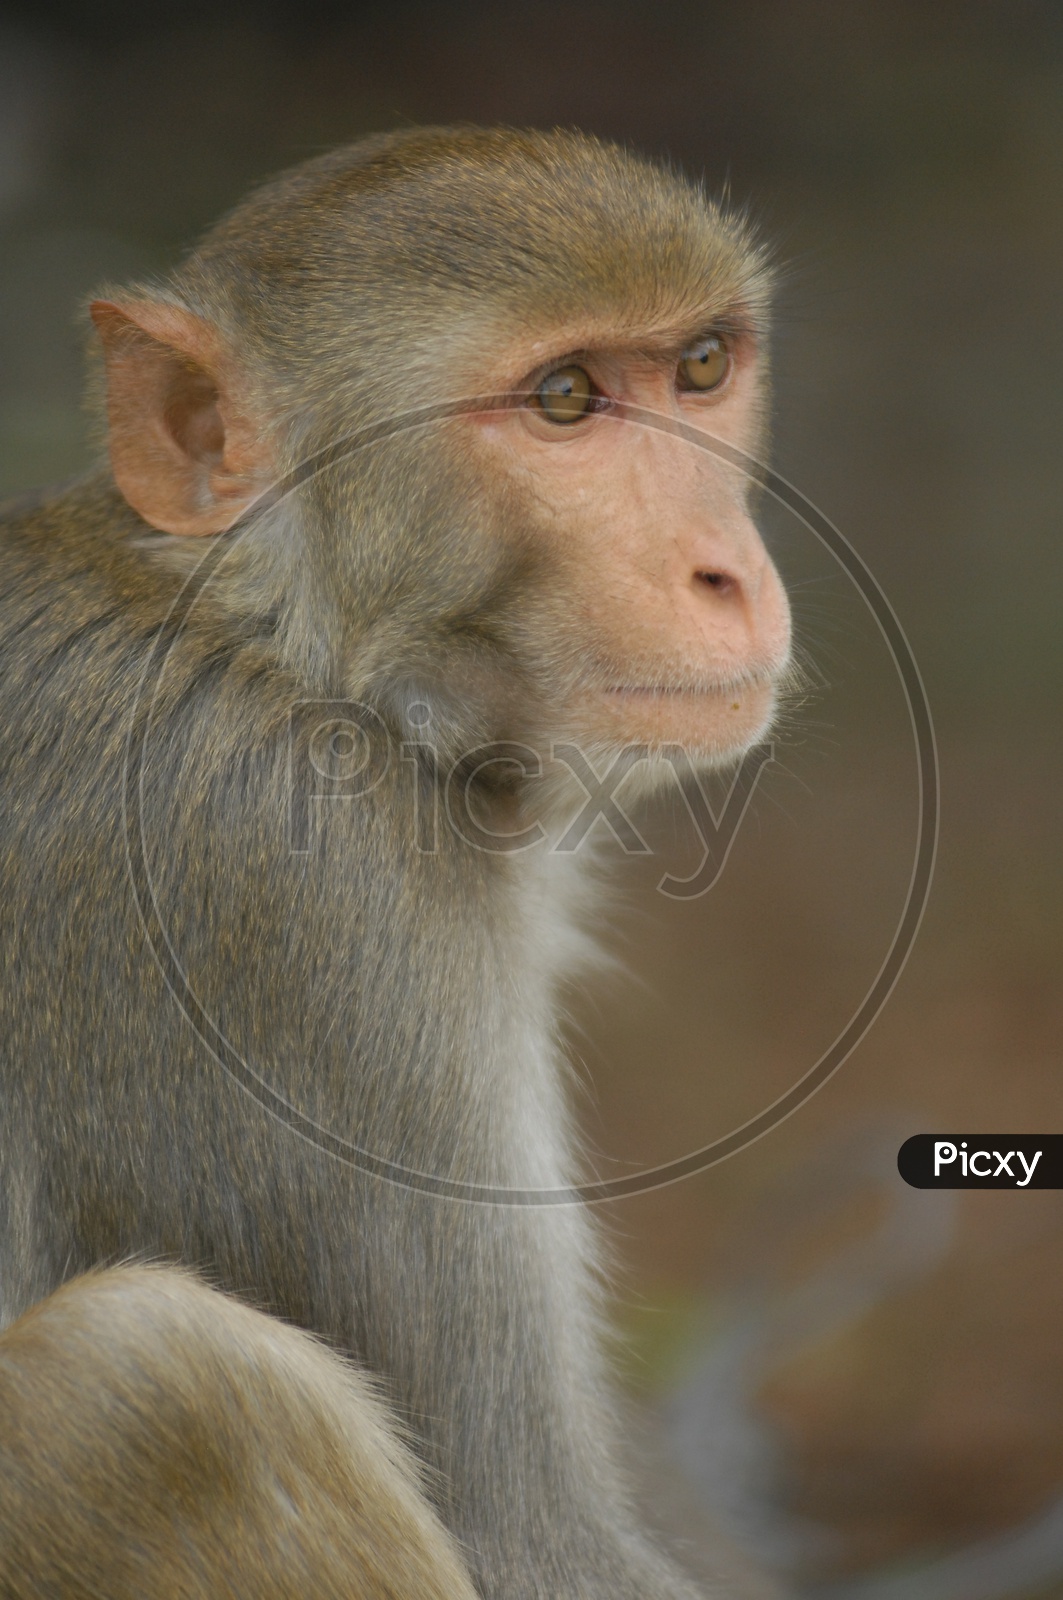 Close up shot of Monkey face